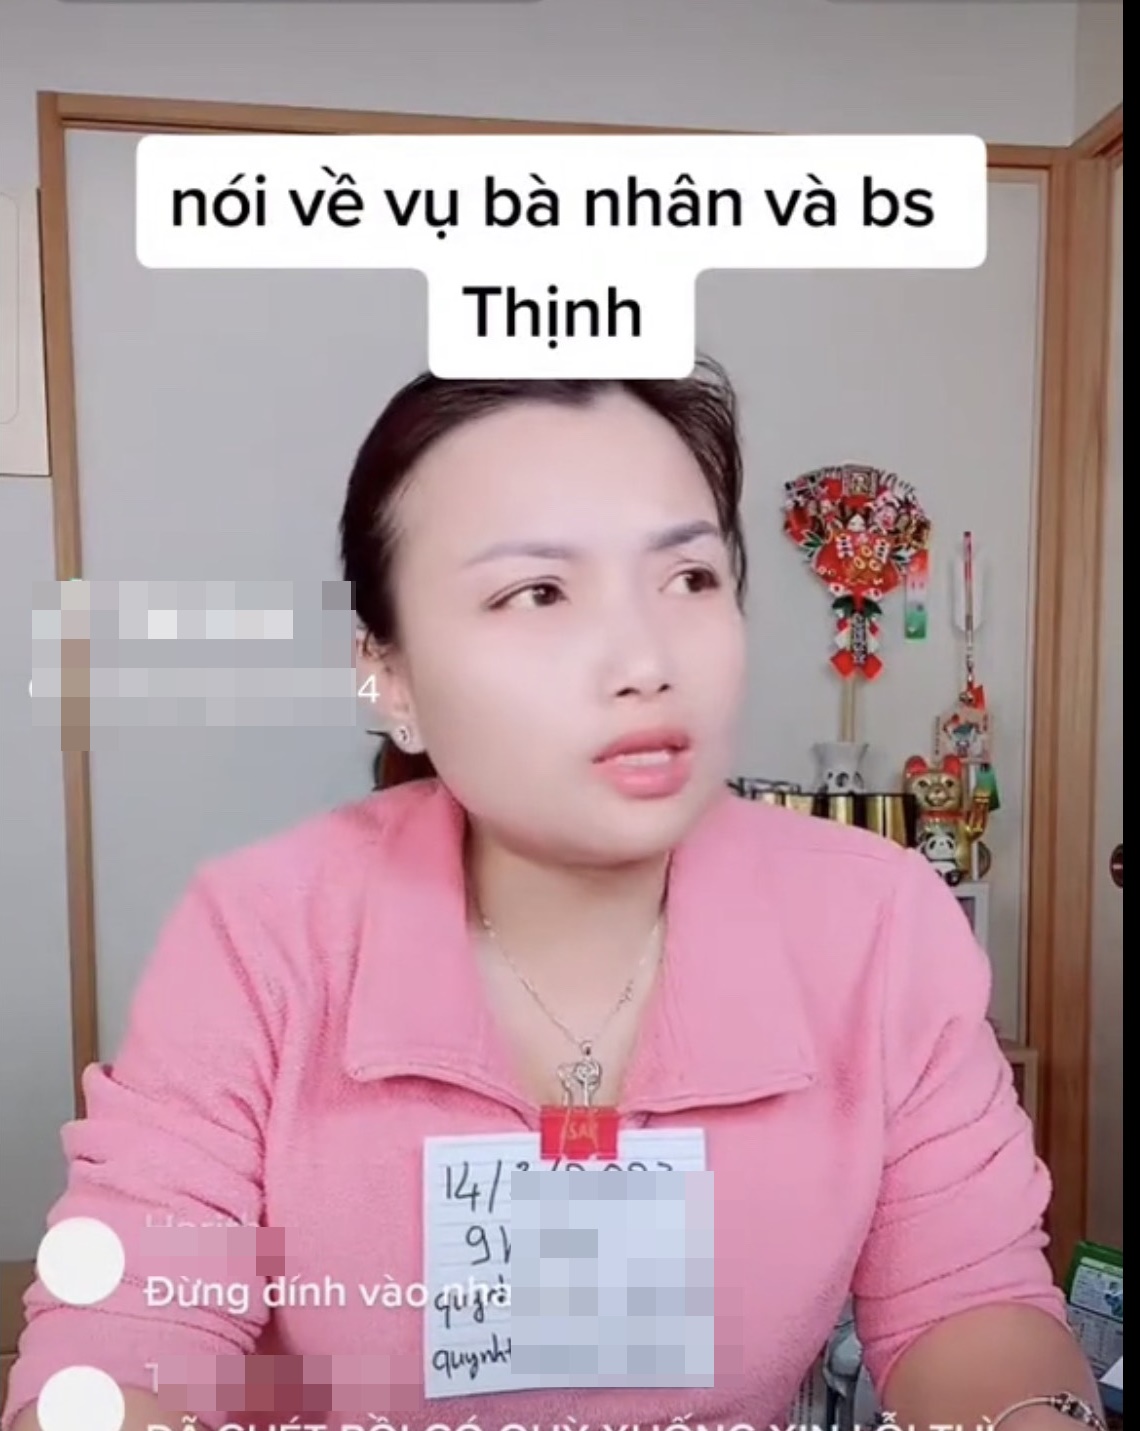 Quỳnh Trần JP tuyên bố bác sĩ Thịnh sai, khẳng định không bênh bà Nhân Vlog, hé lộ 1 bí mật đằng sau - ảnh 4